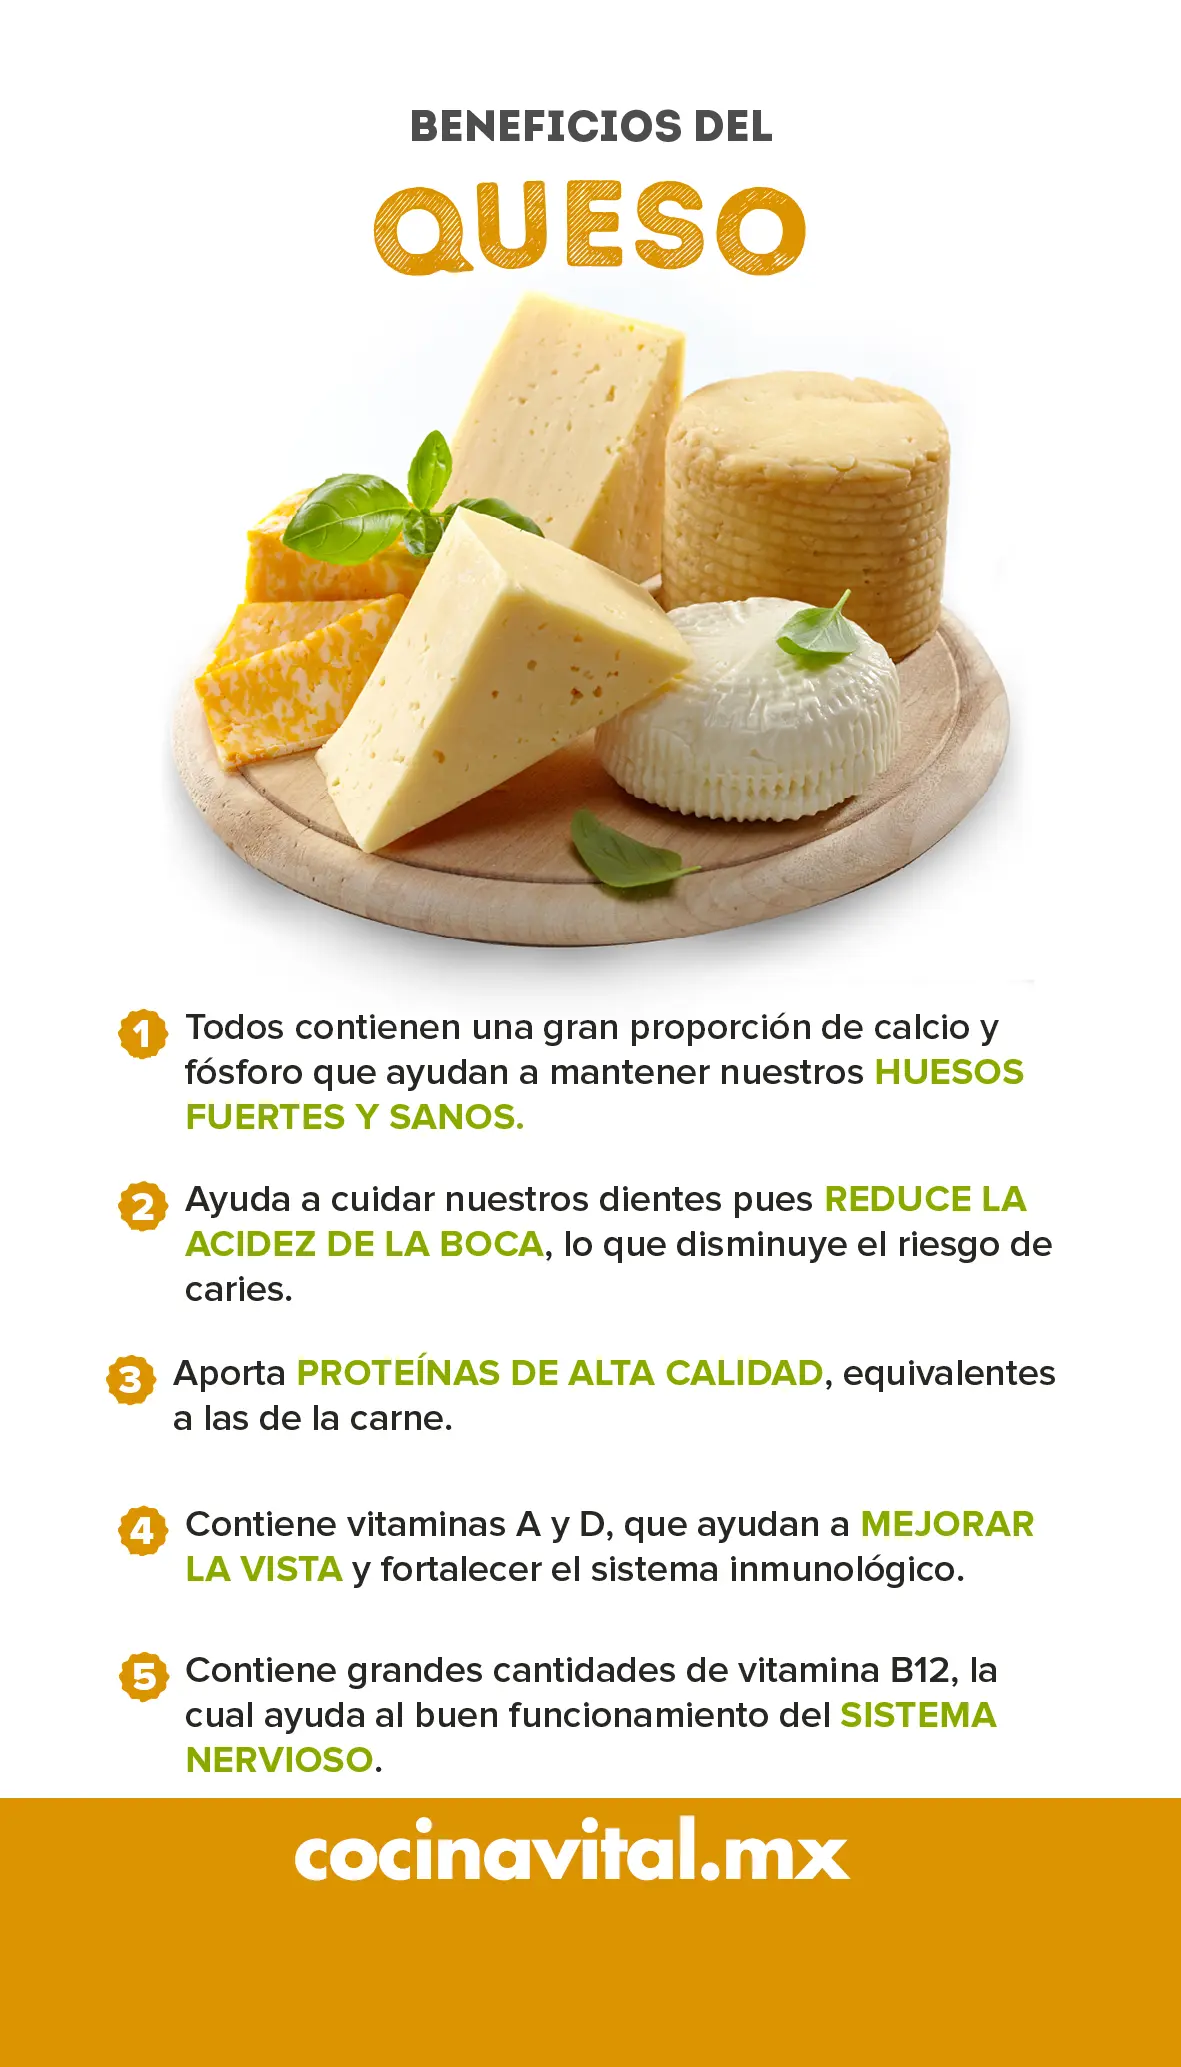 nutrientes del queso - Qué tipo de proteína es el queso